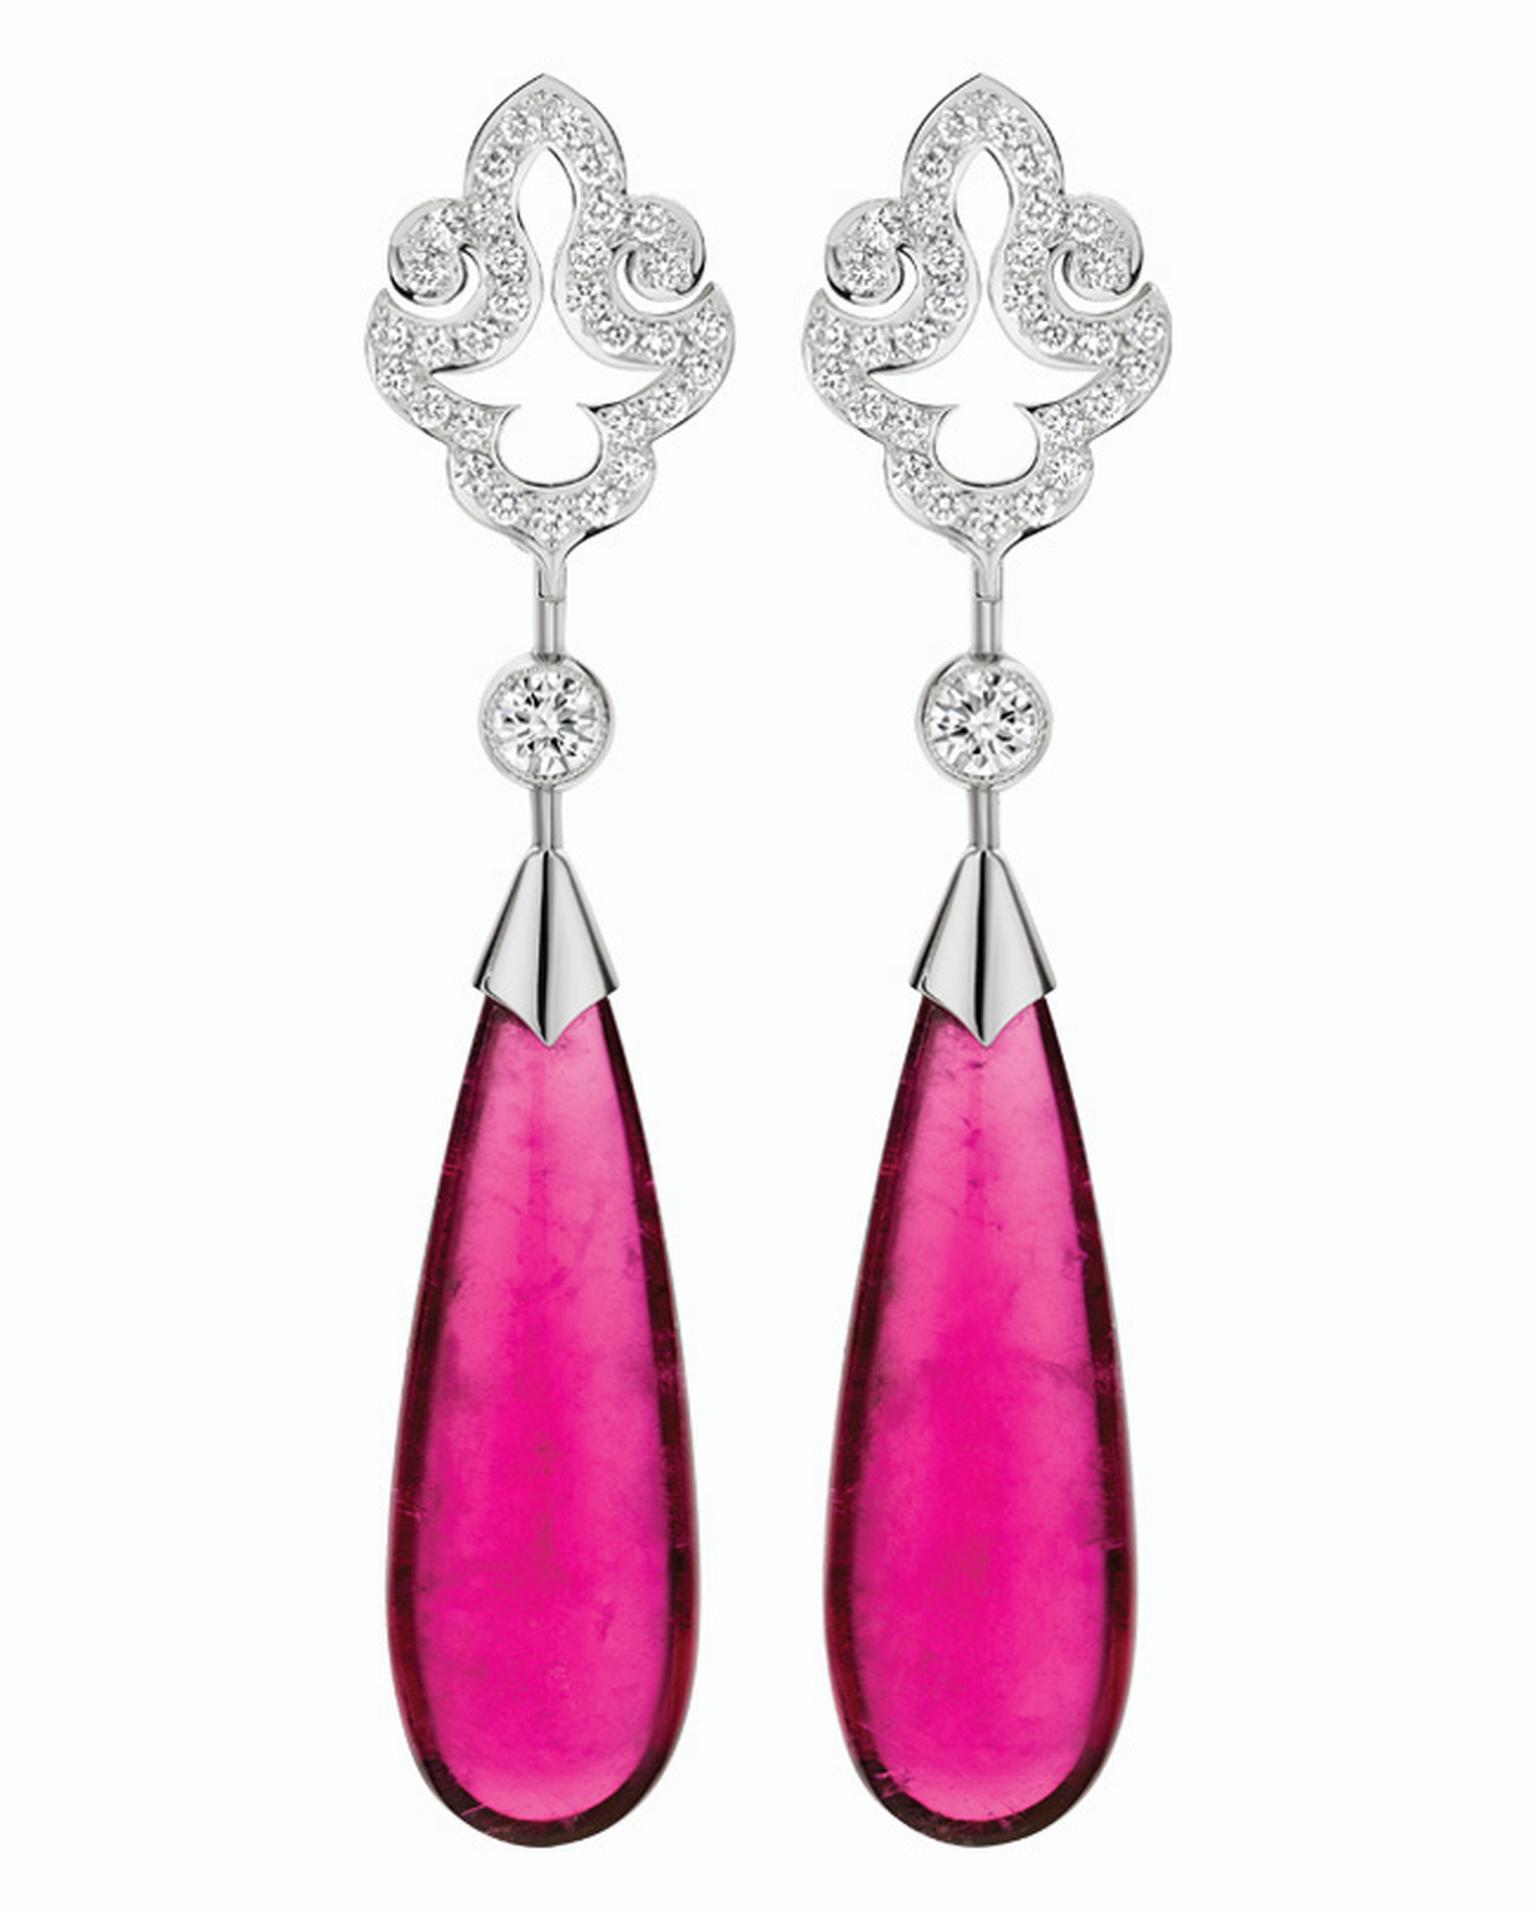 Calleija Maharaja rubbelite and diamond earrings_20140220_Main